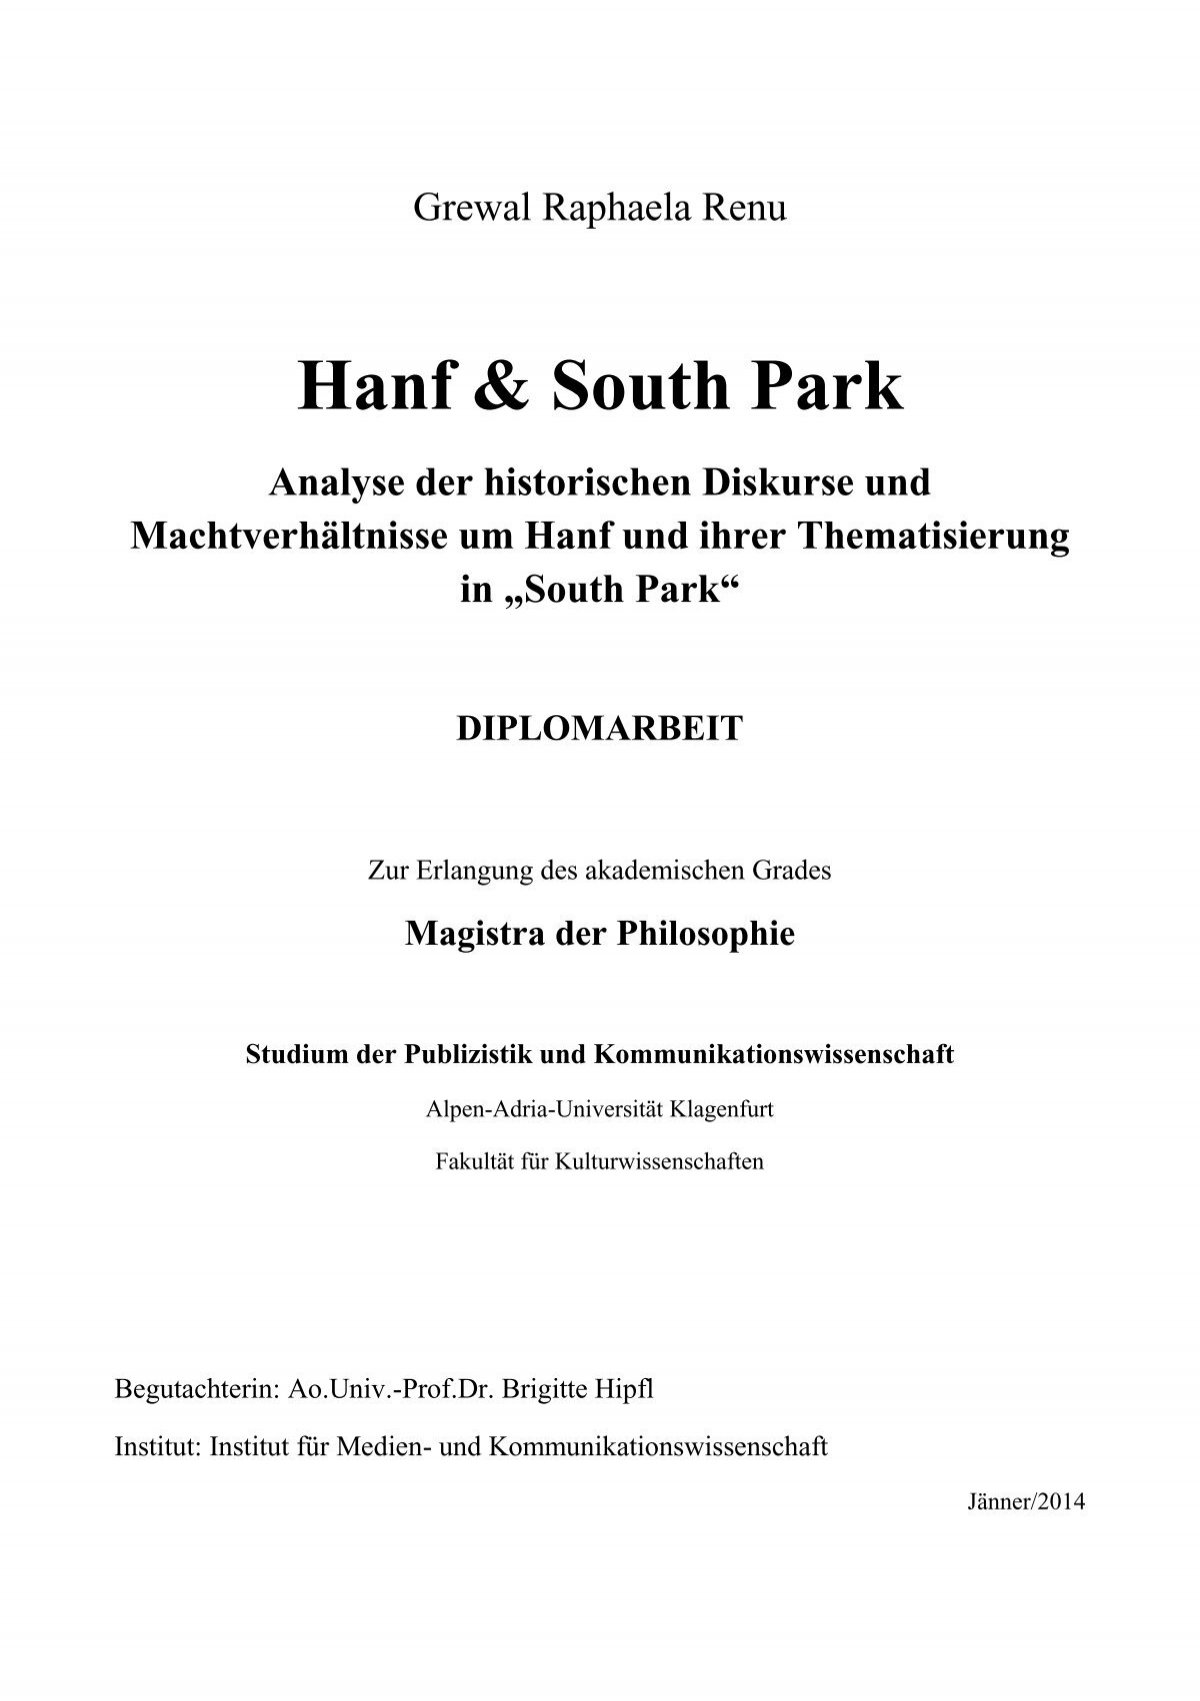 Hanf Park und South